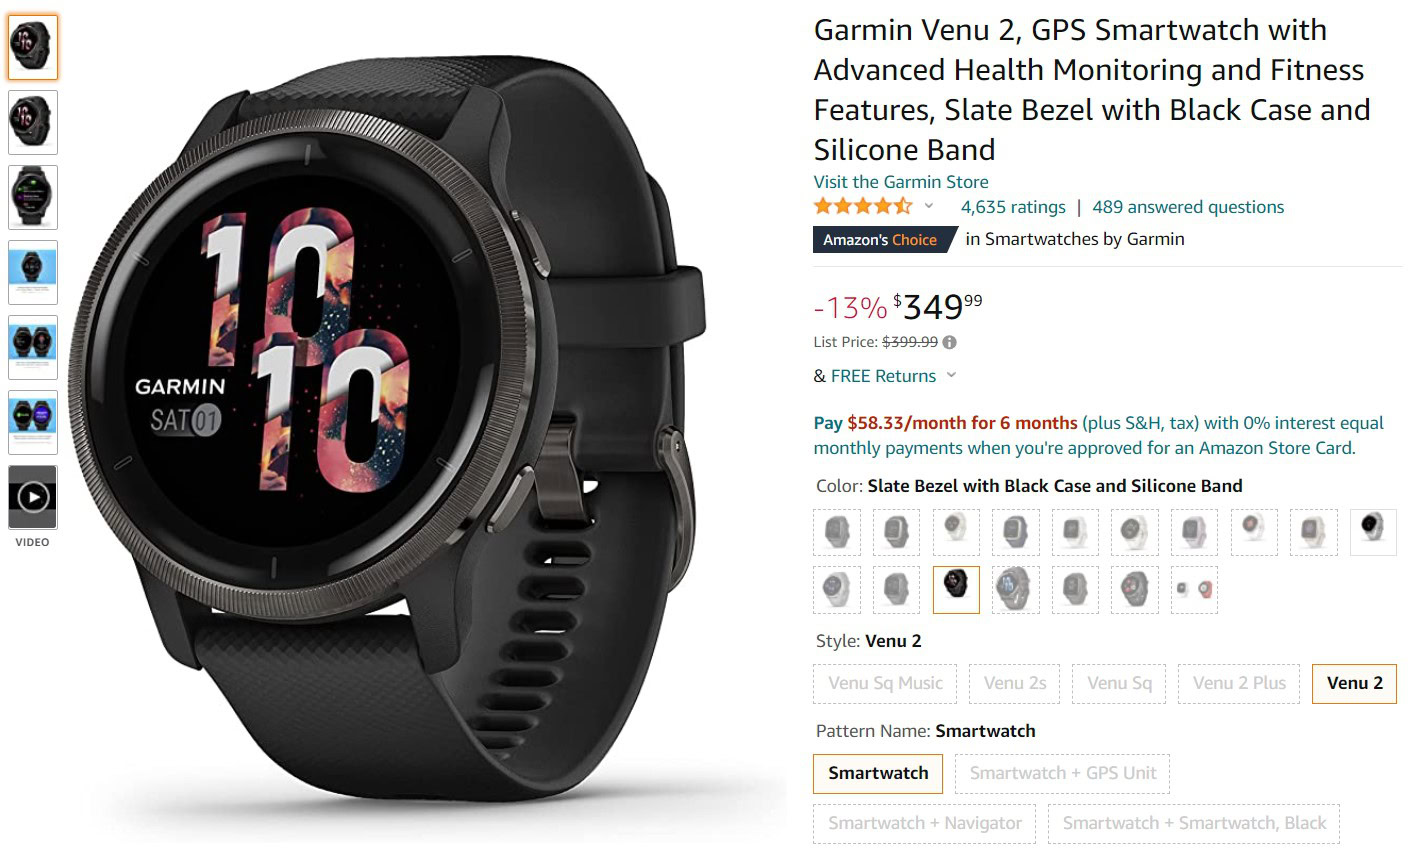 Garmin Venu 2 Smartwatch Amazon Deal